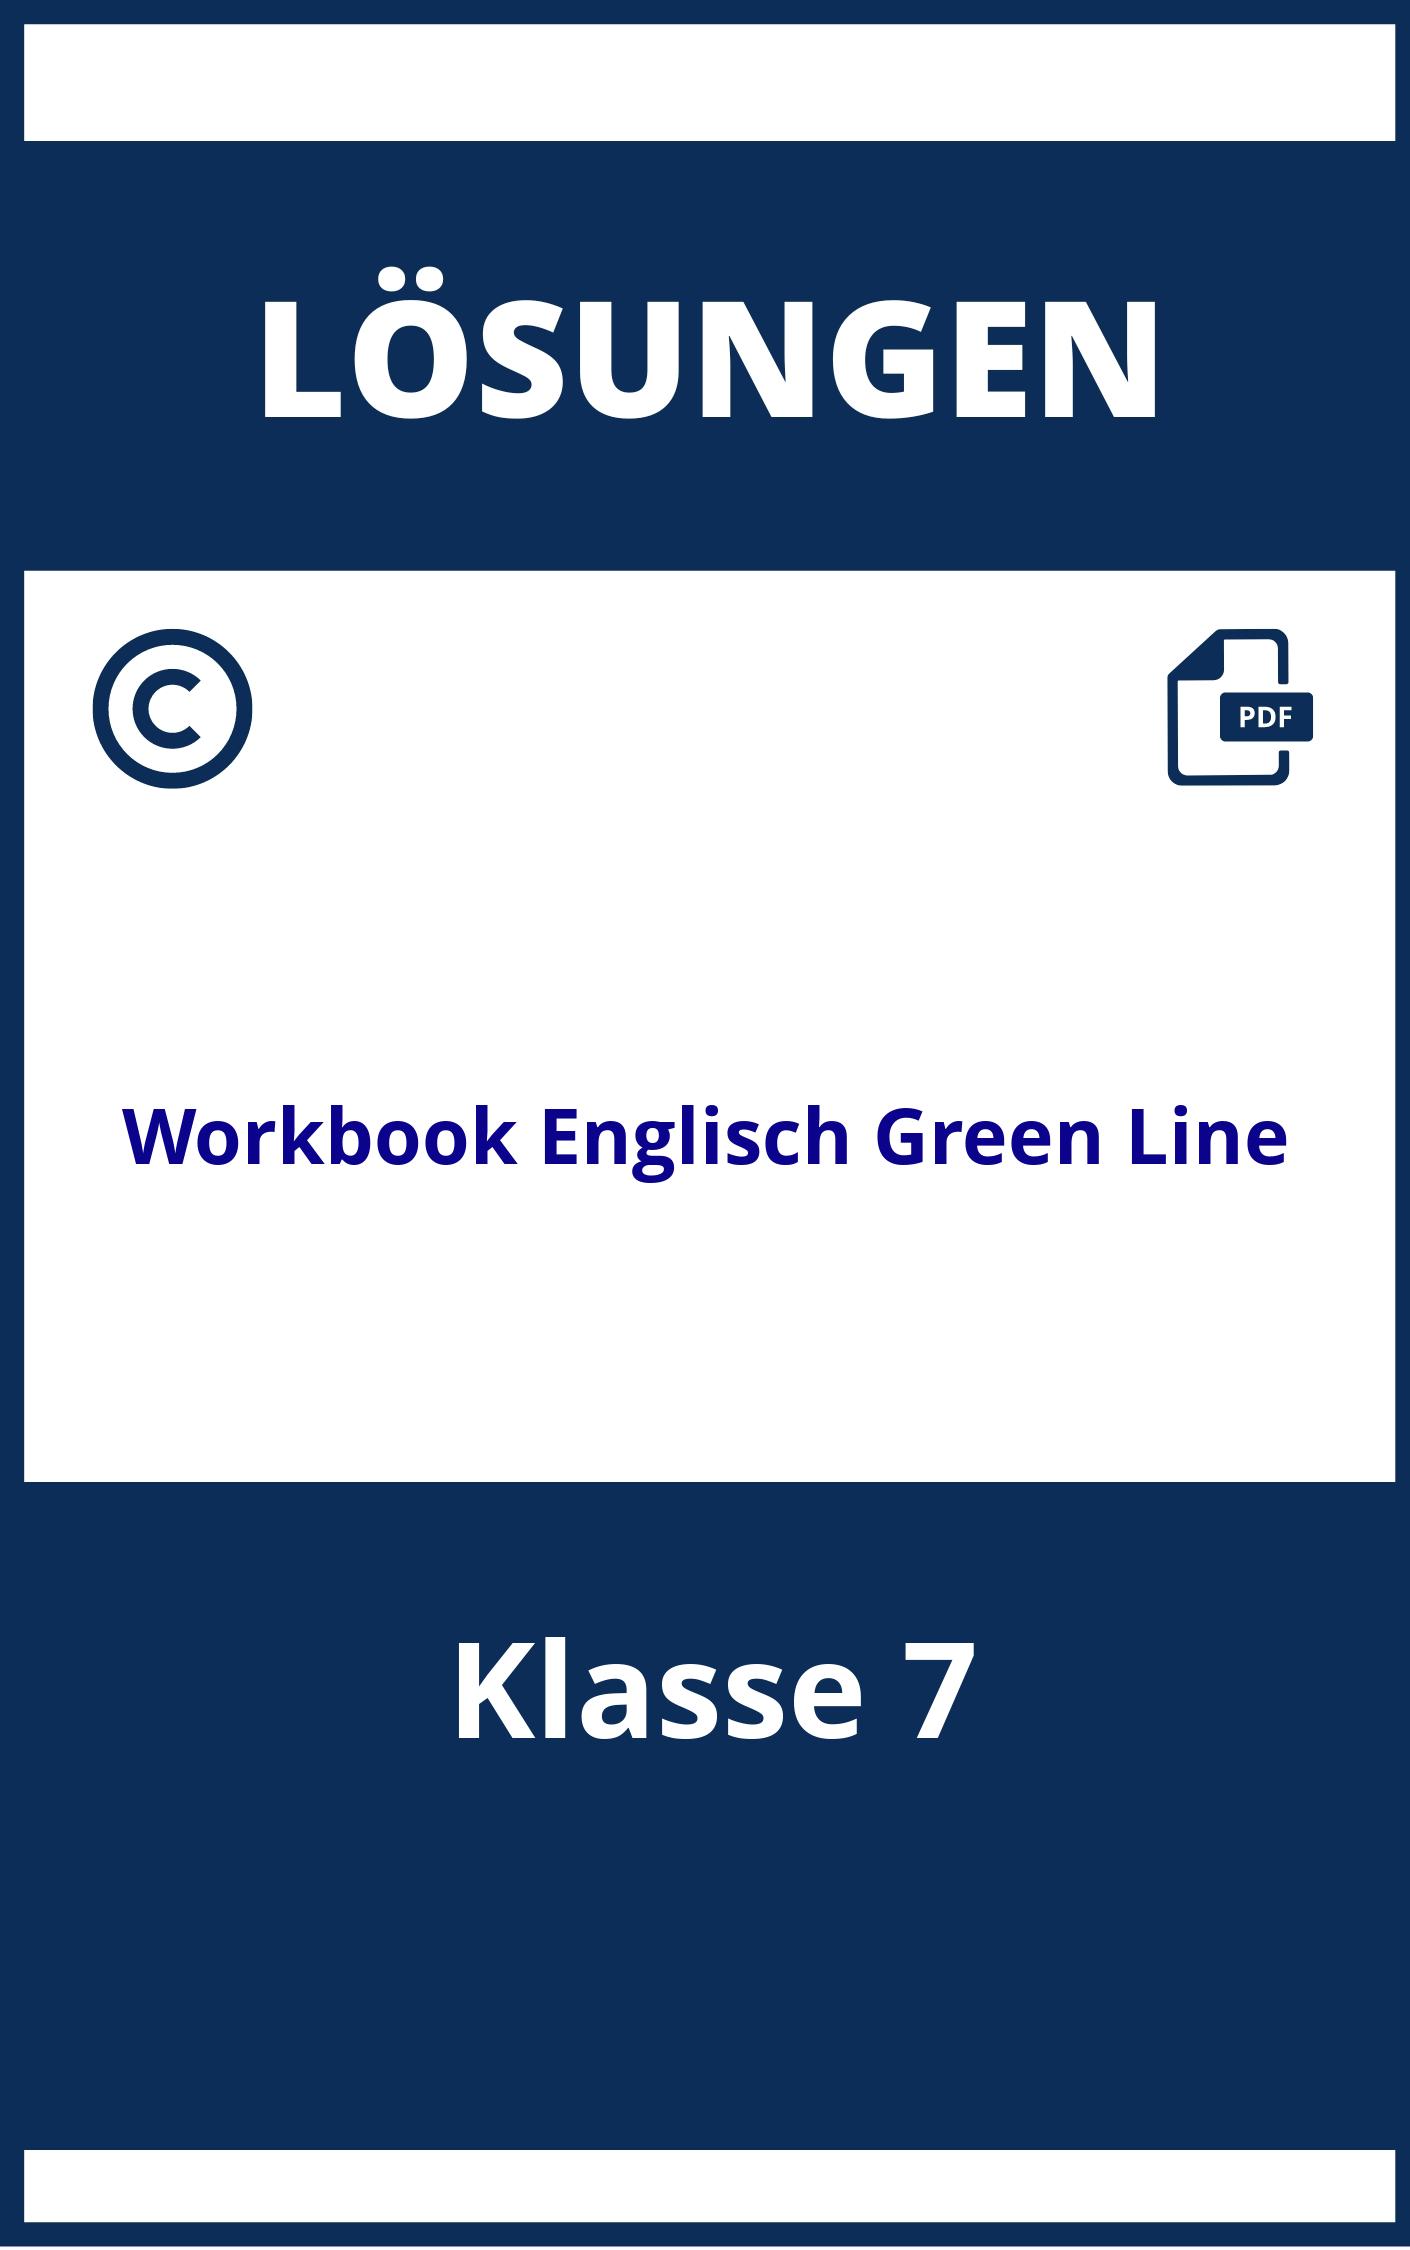 Workbook Englisch Klasse 7 Green Line Lösungen